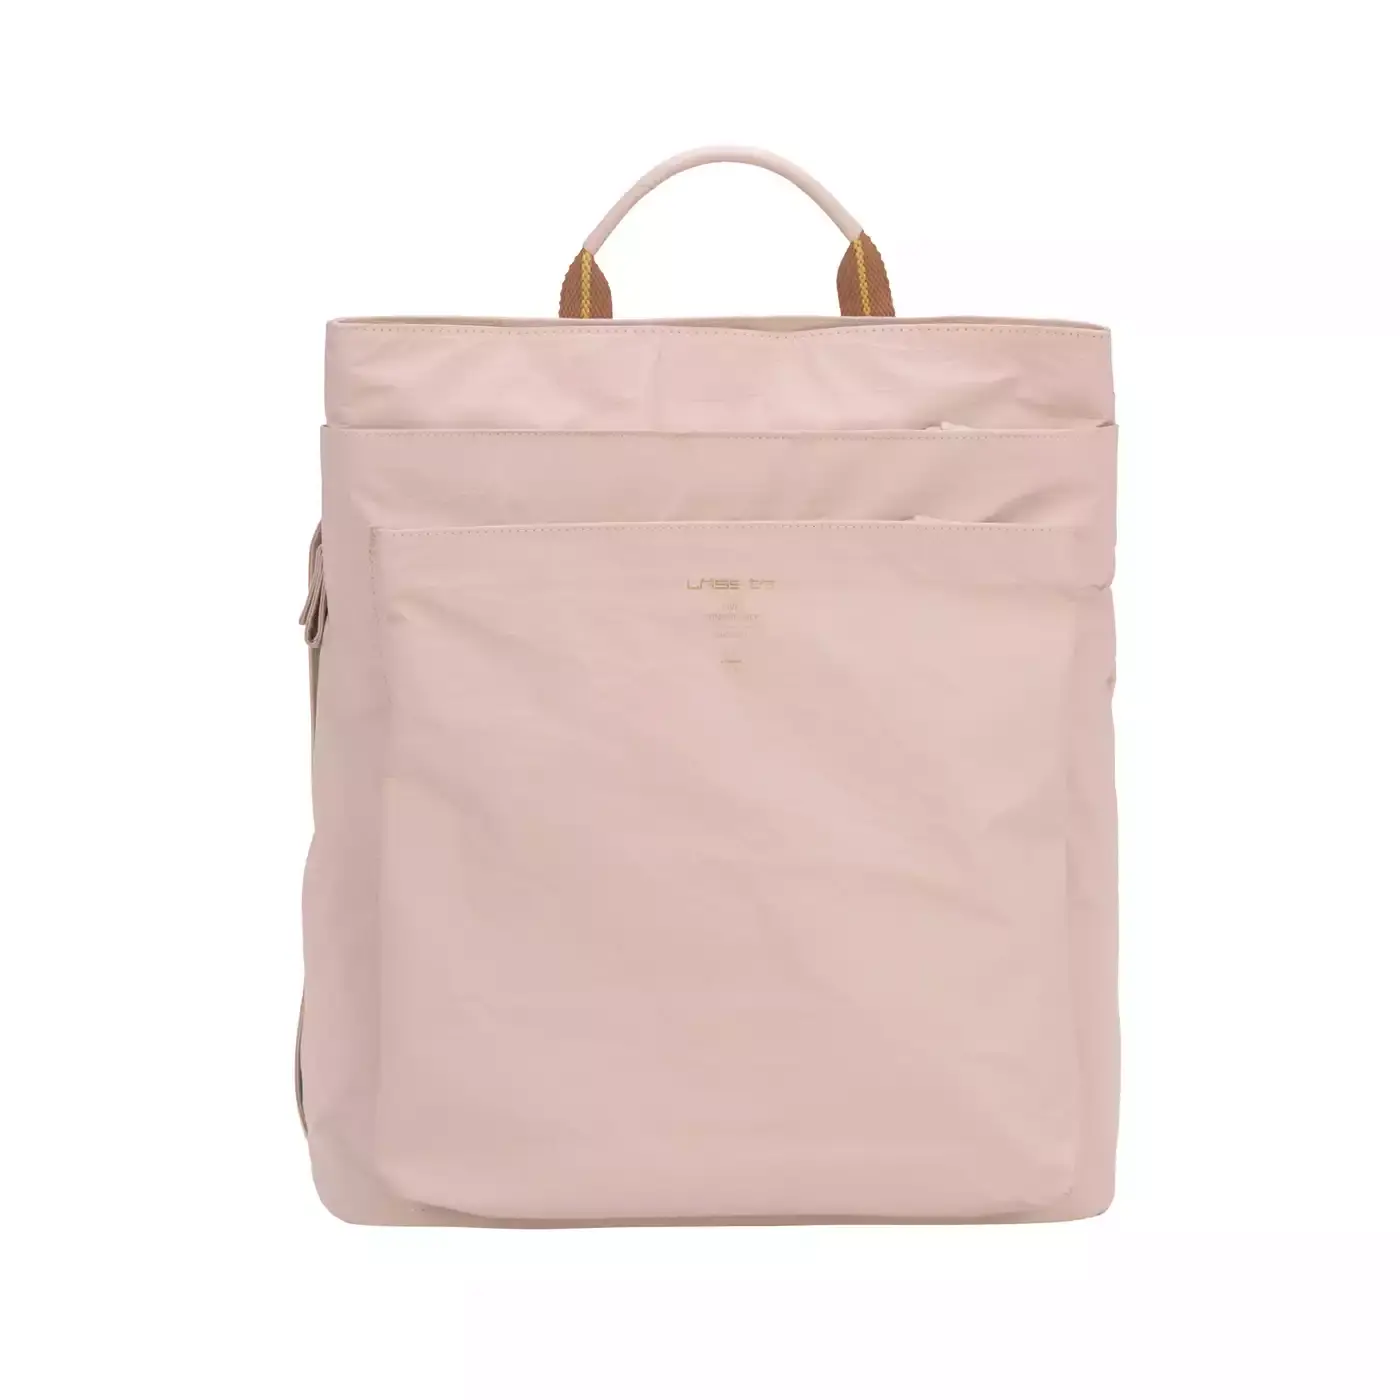 Tyve Backpack Green Label LÄSSIG Rosa Pink 2000577818907 3